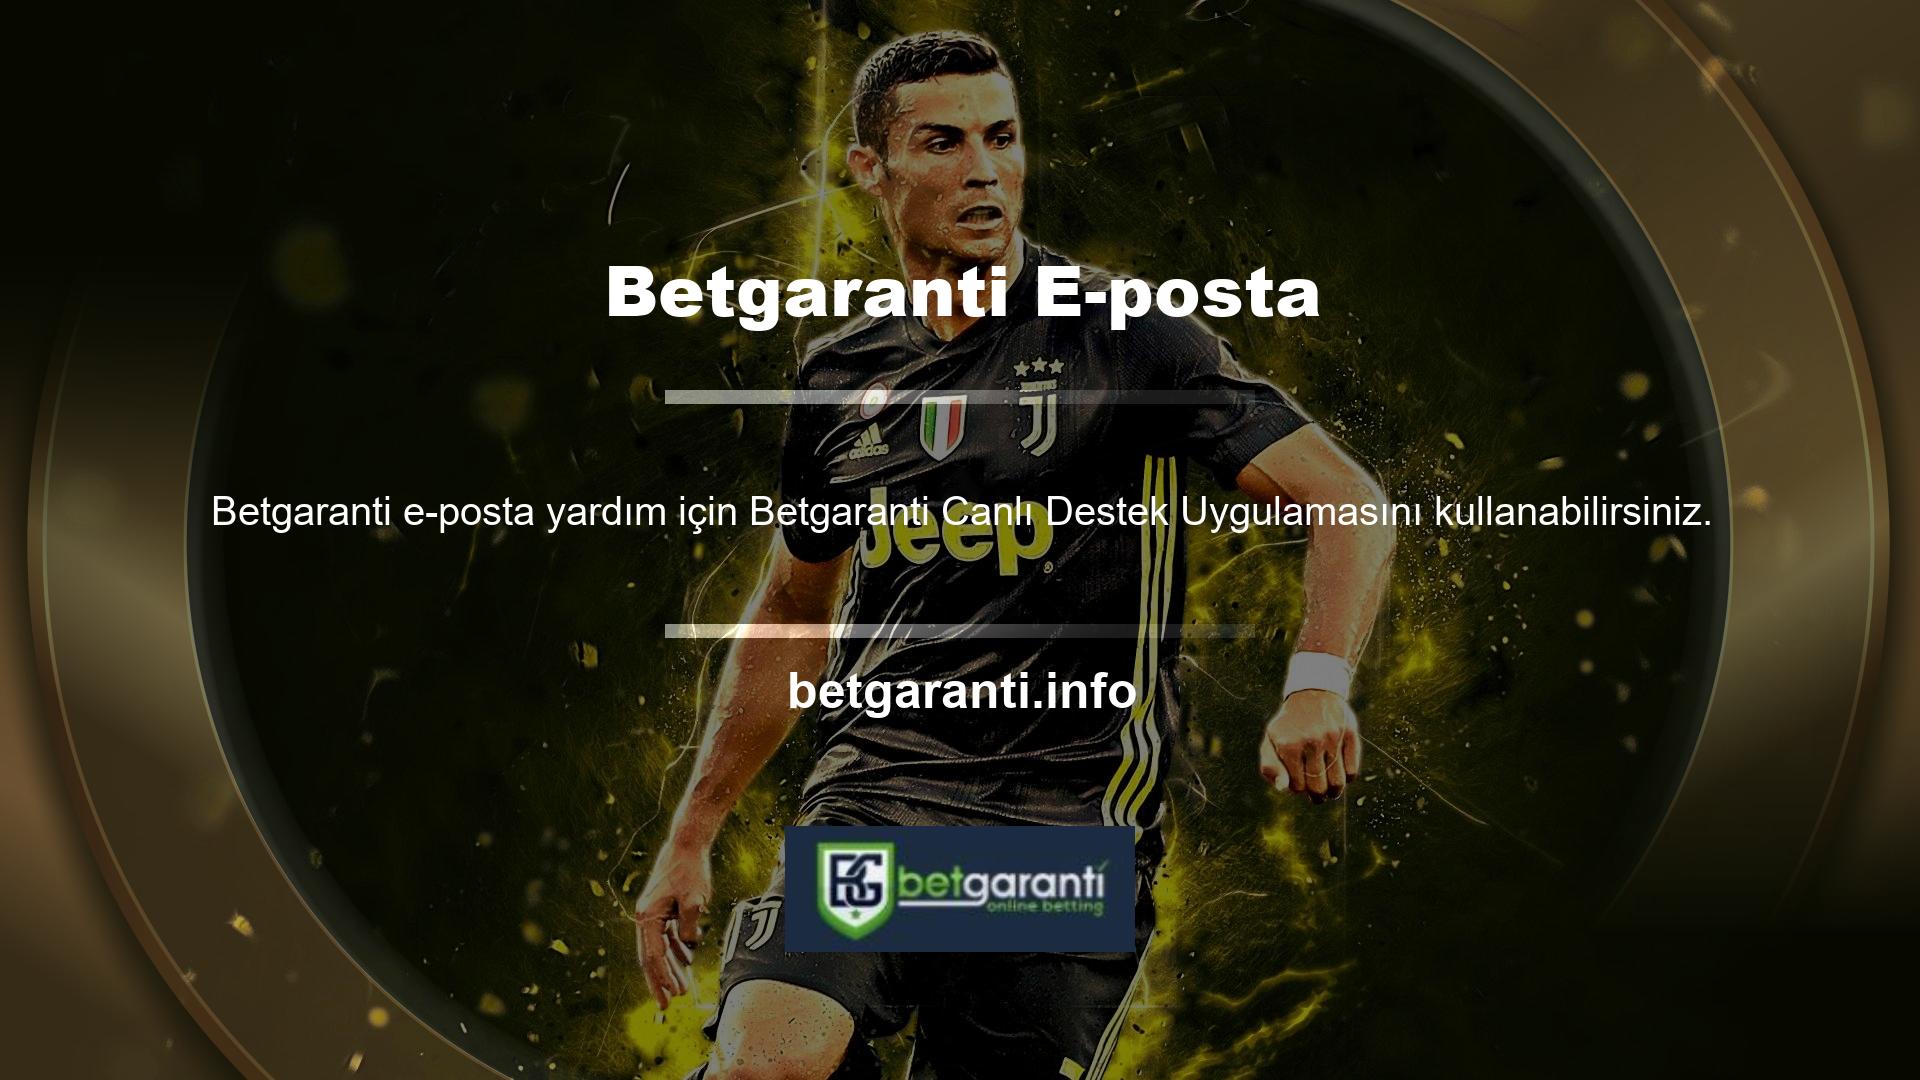 Betgaranti Gaming sitesi, mesajlaşma seçeneklerini kullanarak üyelerine destek hizmetleri sunmaktadır